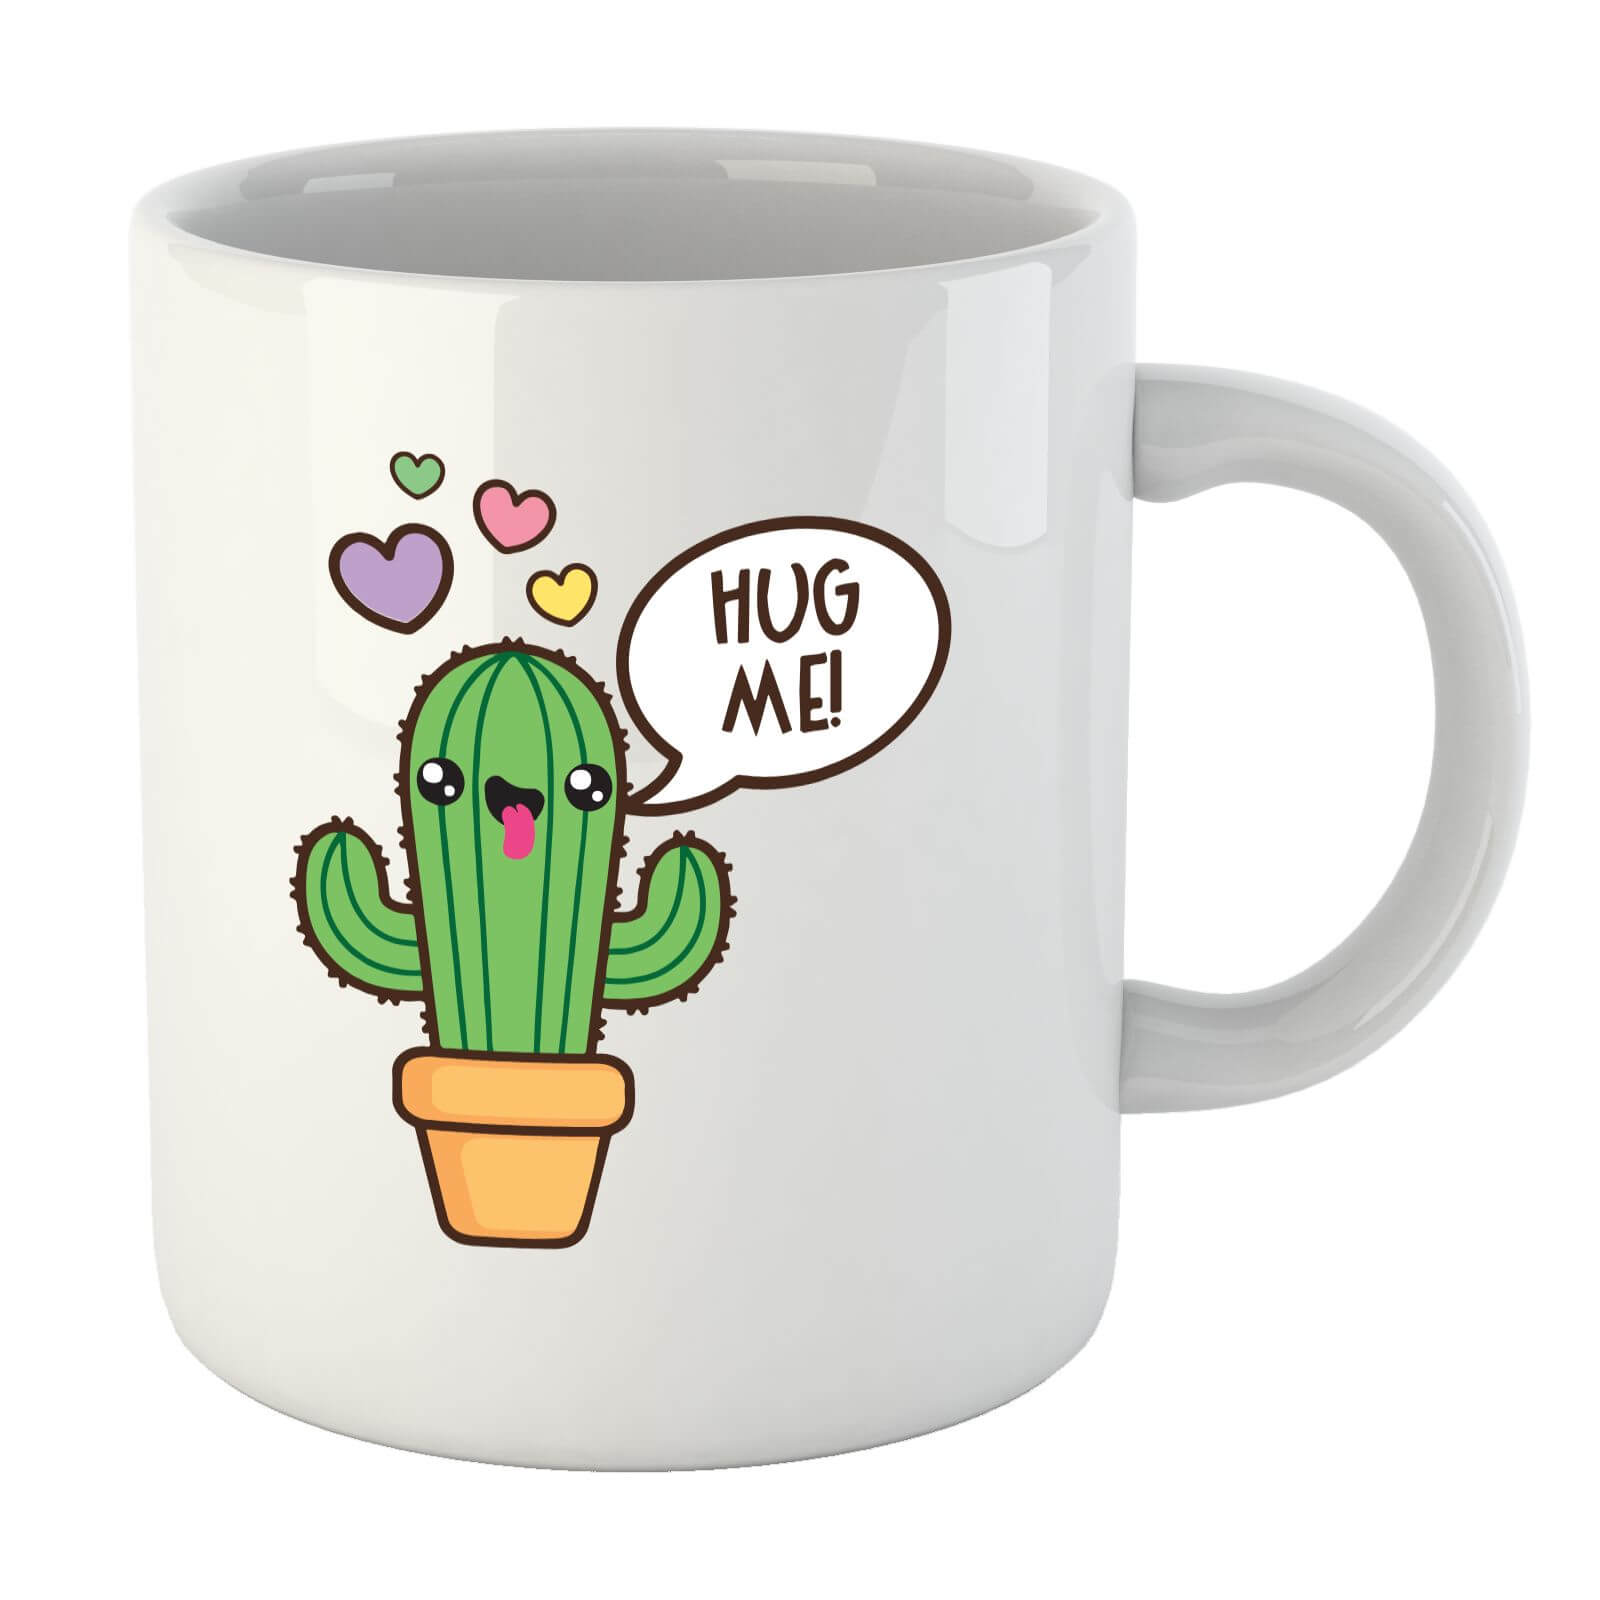 Hug Me Cactus Mug